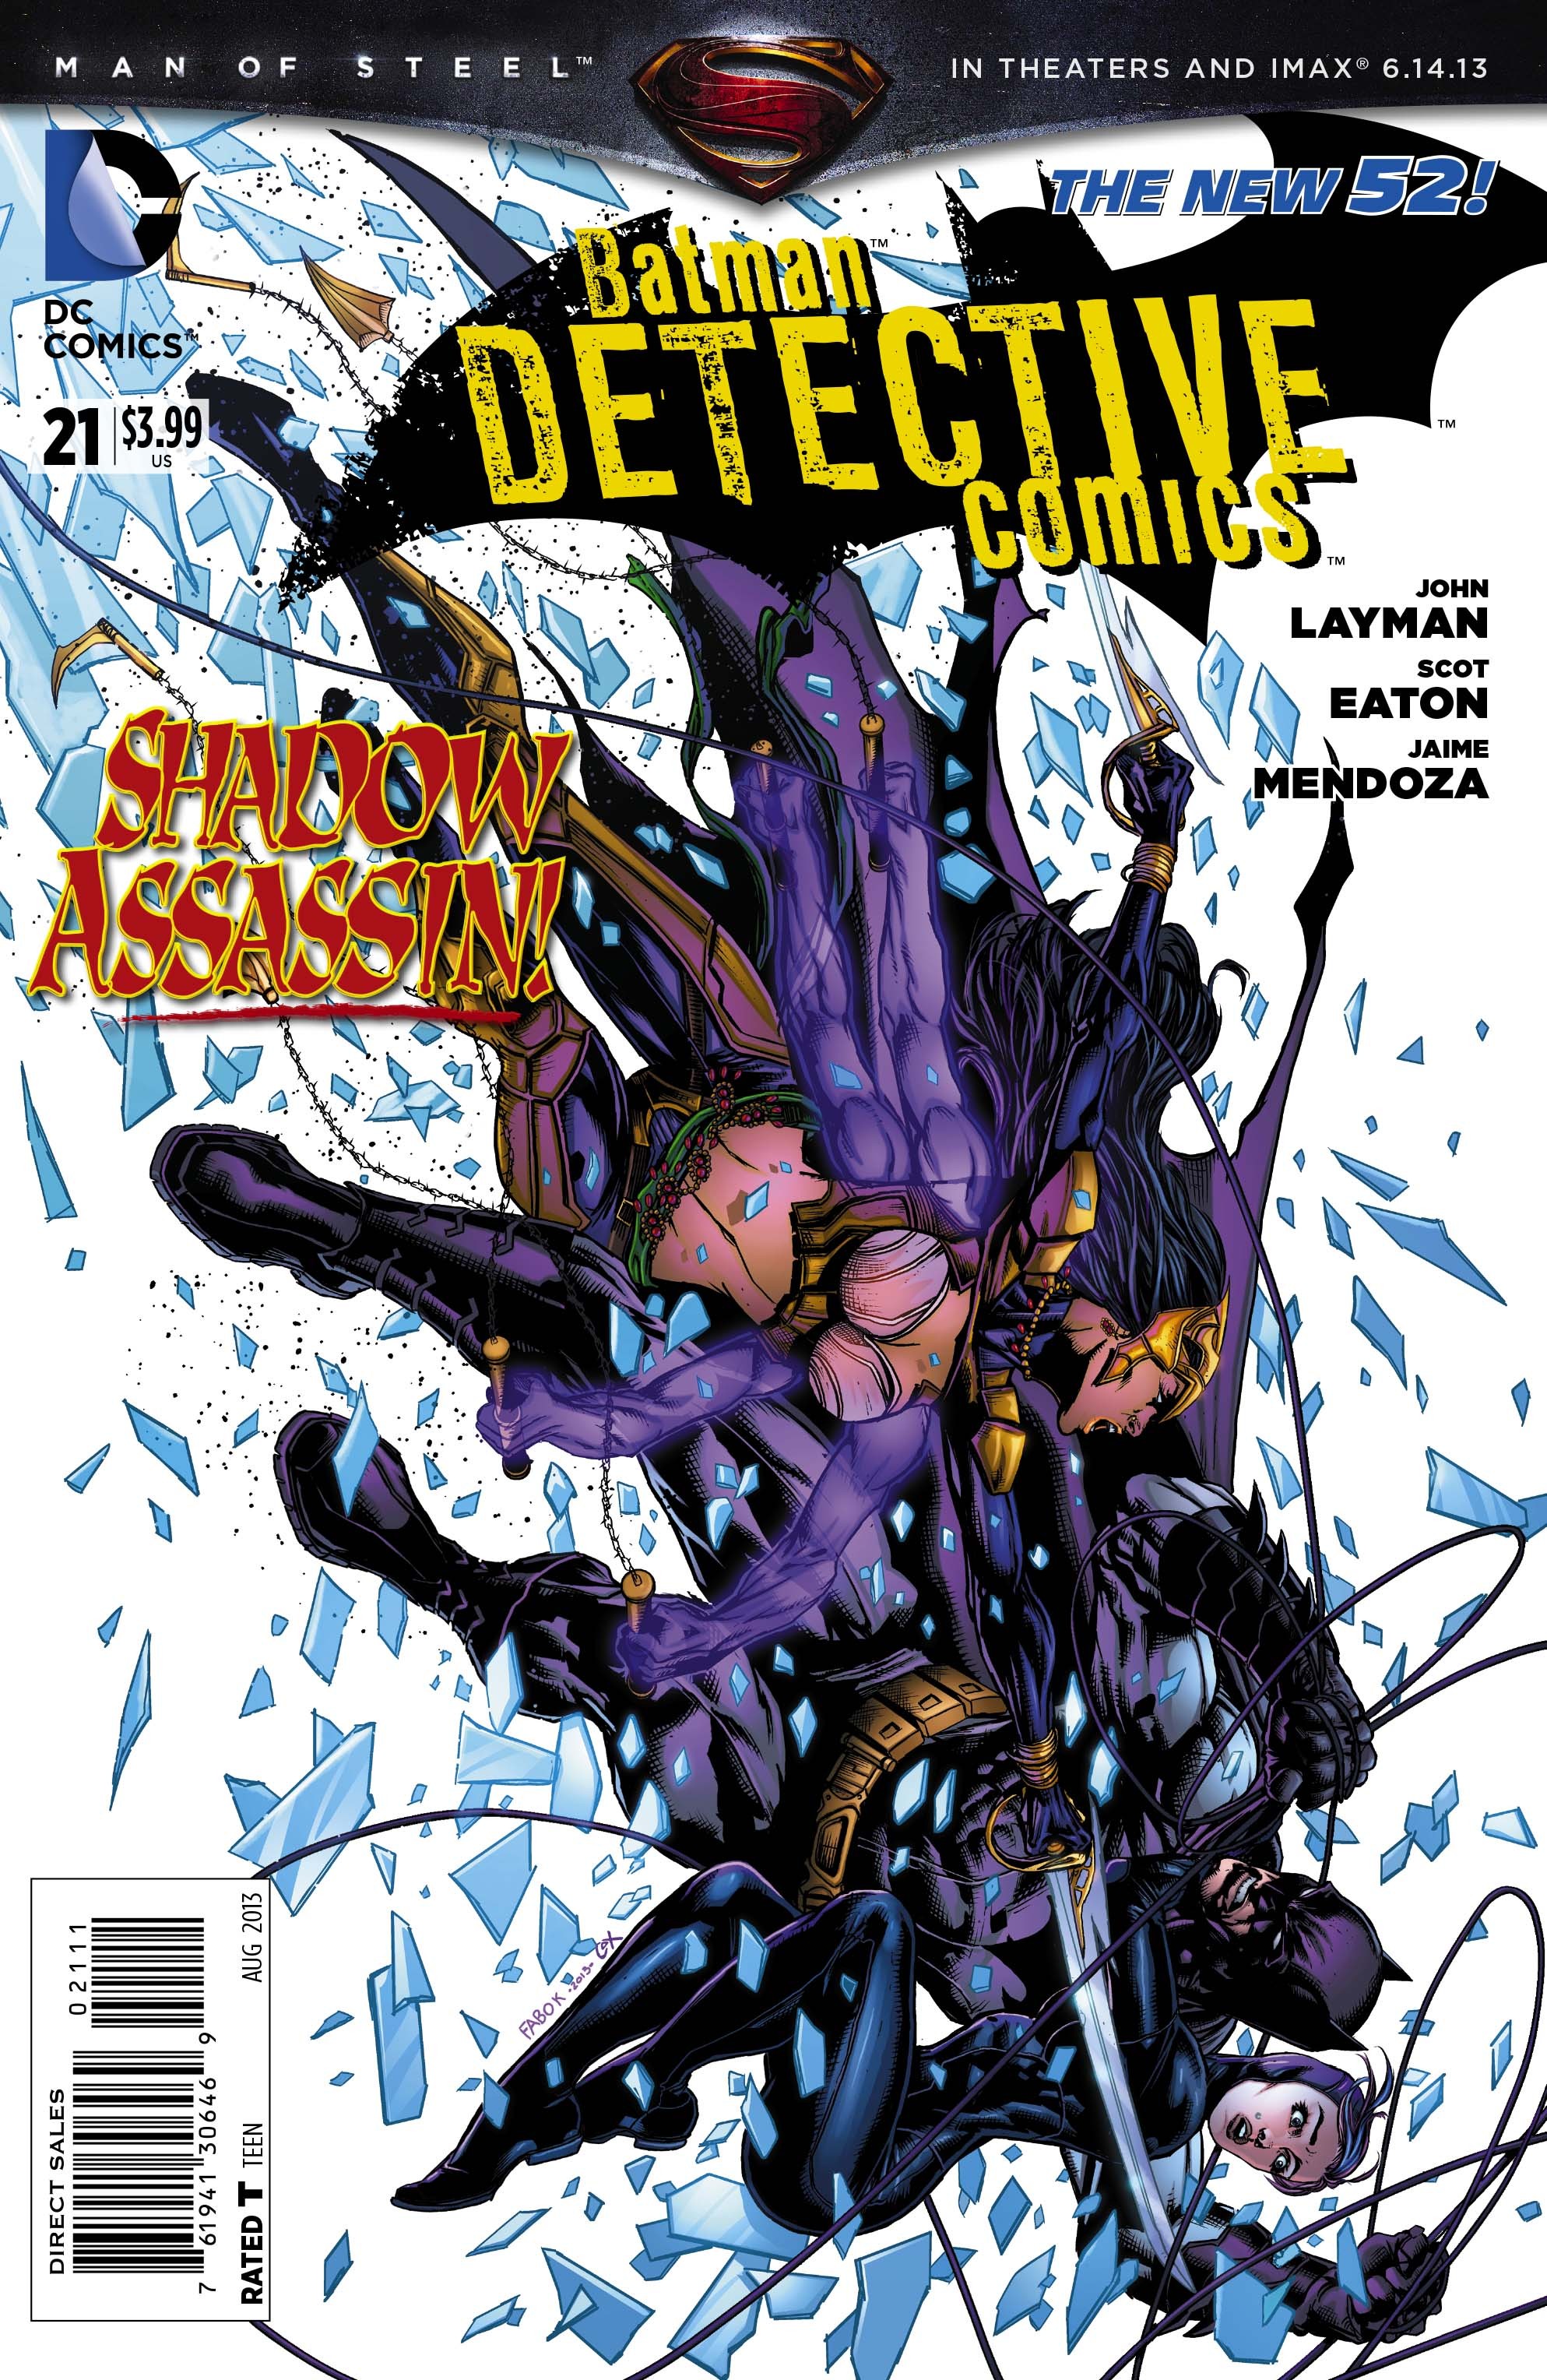 Detective Comics Vol. 2 #21